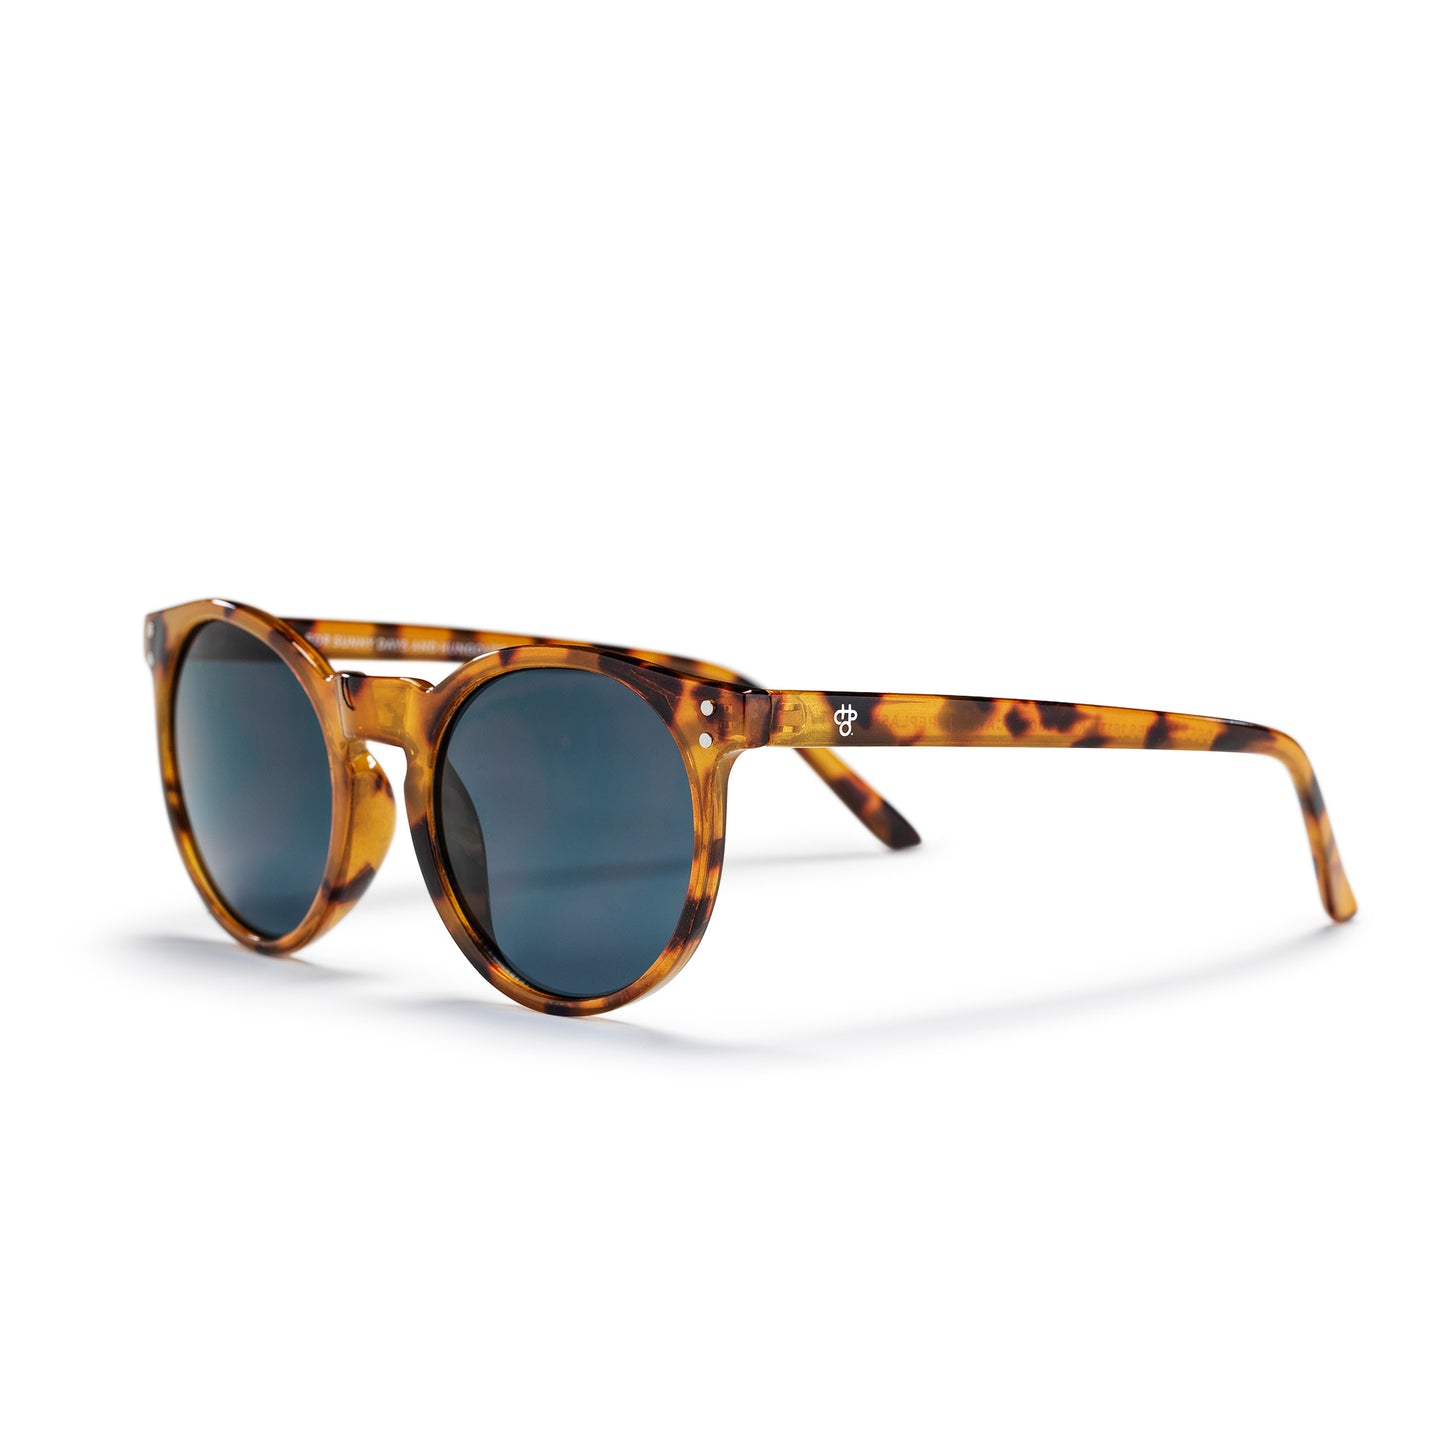 Sunglasses Cotes Desci Basques leopard